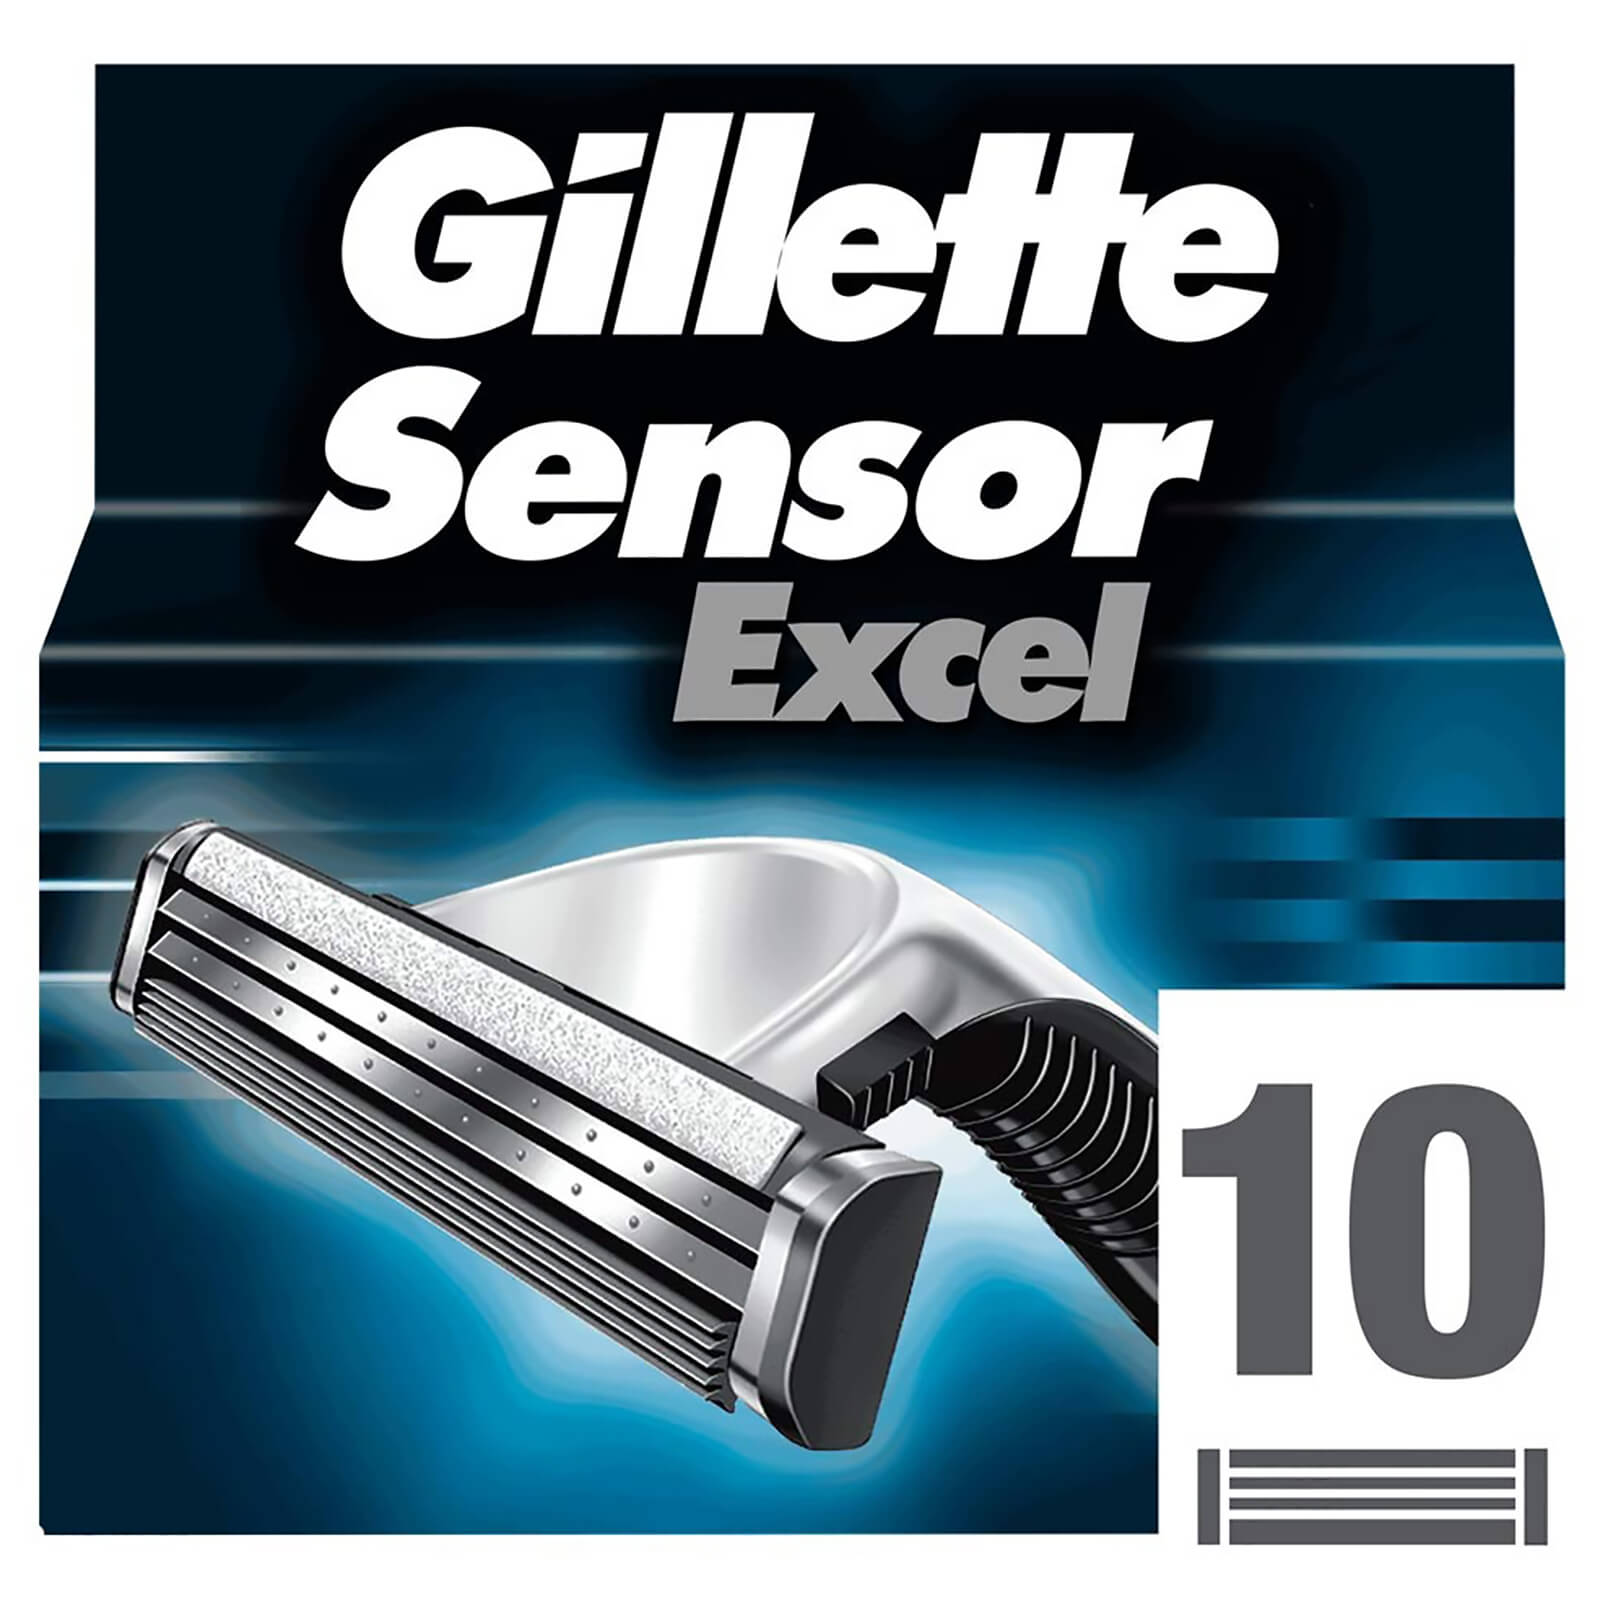 Gillette Sensor Excel Razor Blades - 10 Pack -1 Month